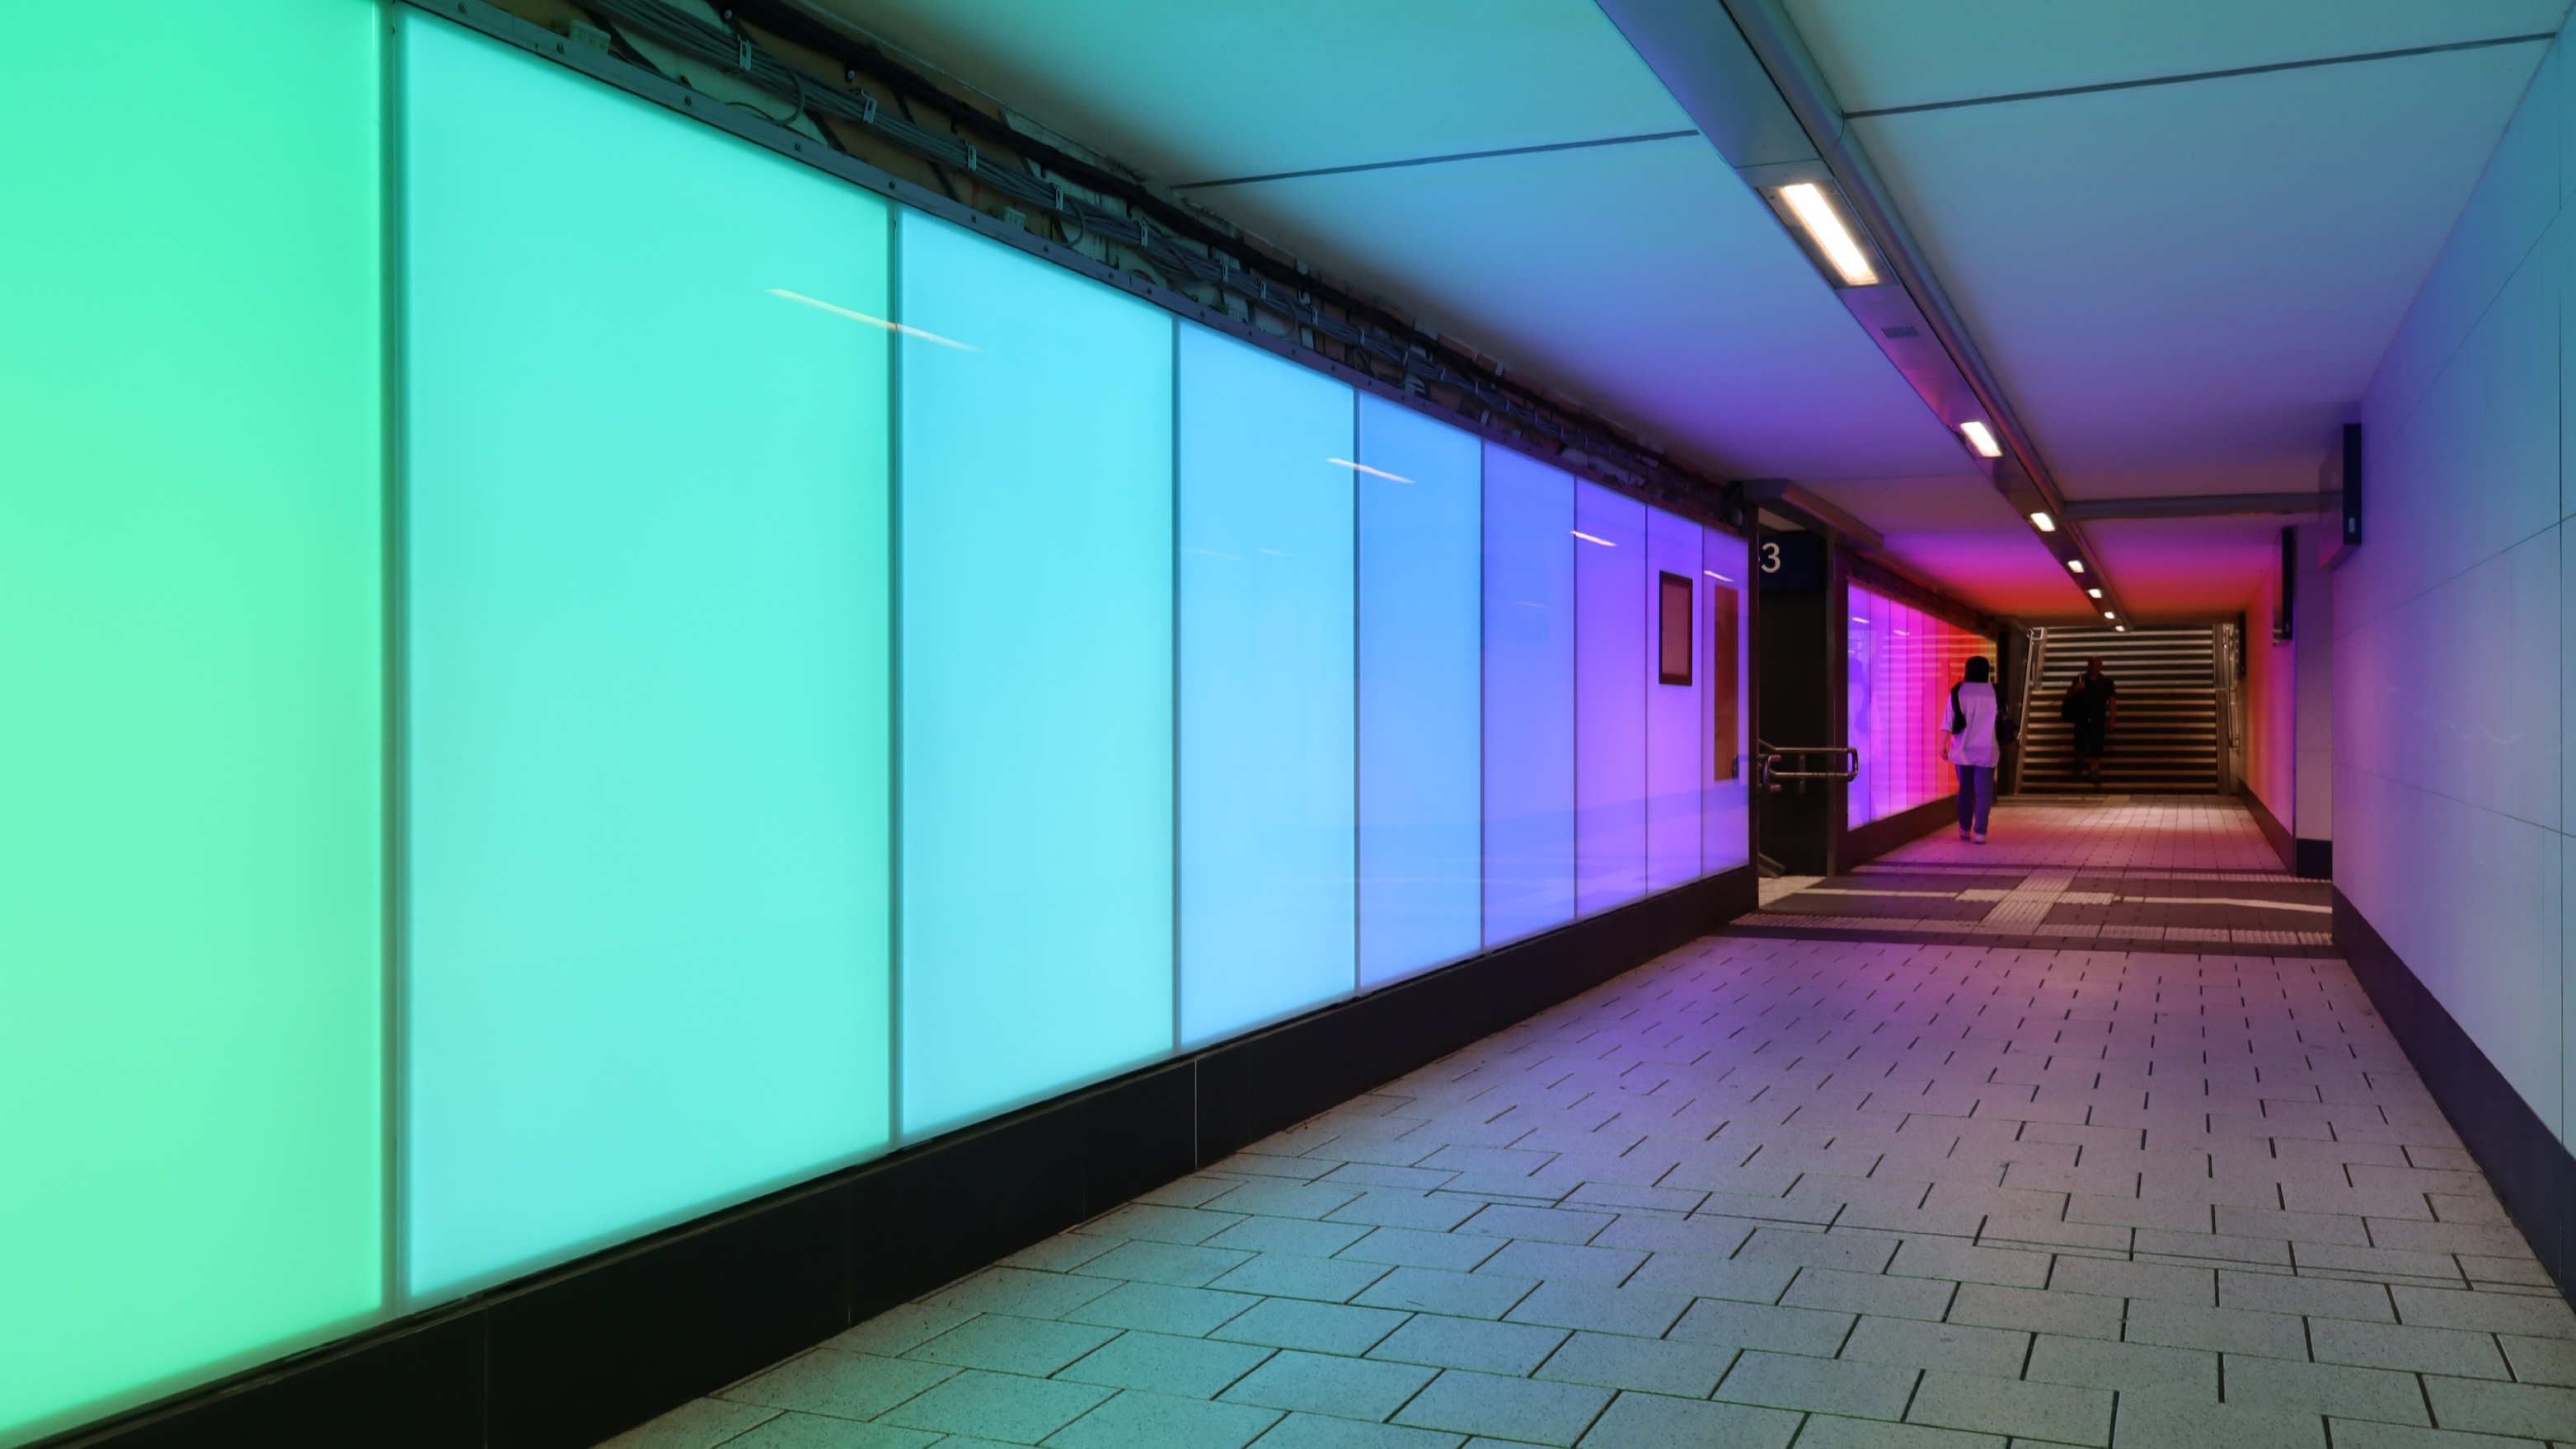 Bahnunterführung am Hauptbahnhof Miltenberg mit großen LED-Panels, die in allen Farben des Regenbogens leuchten.